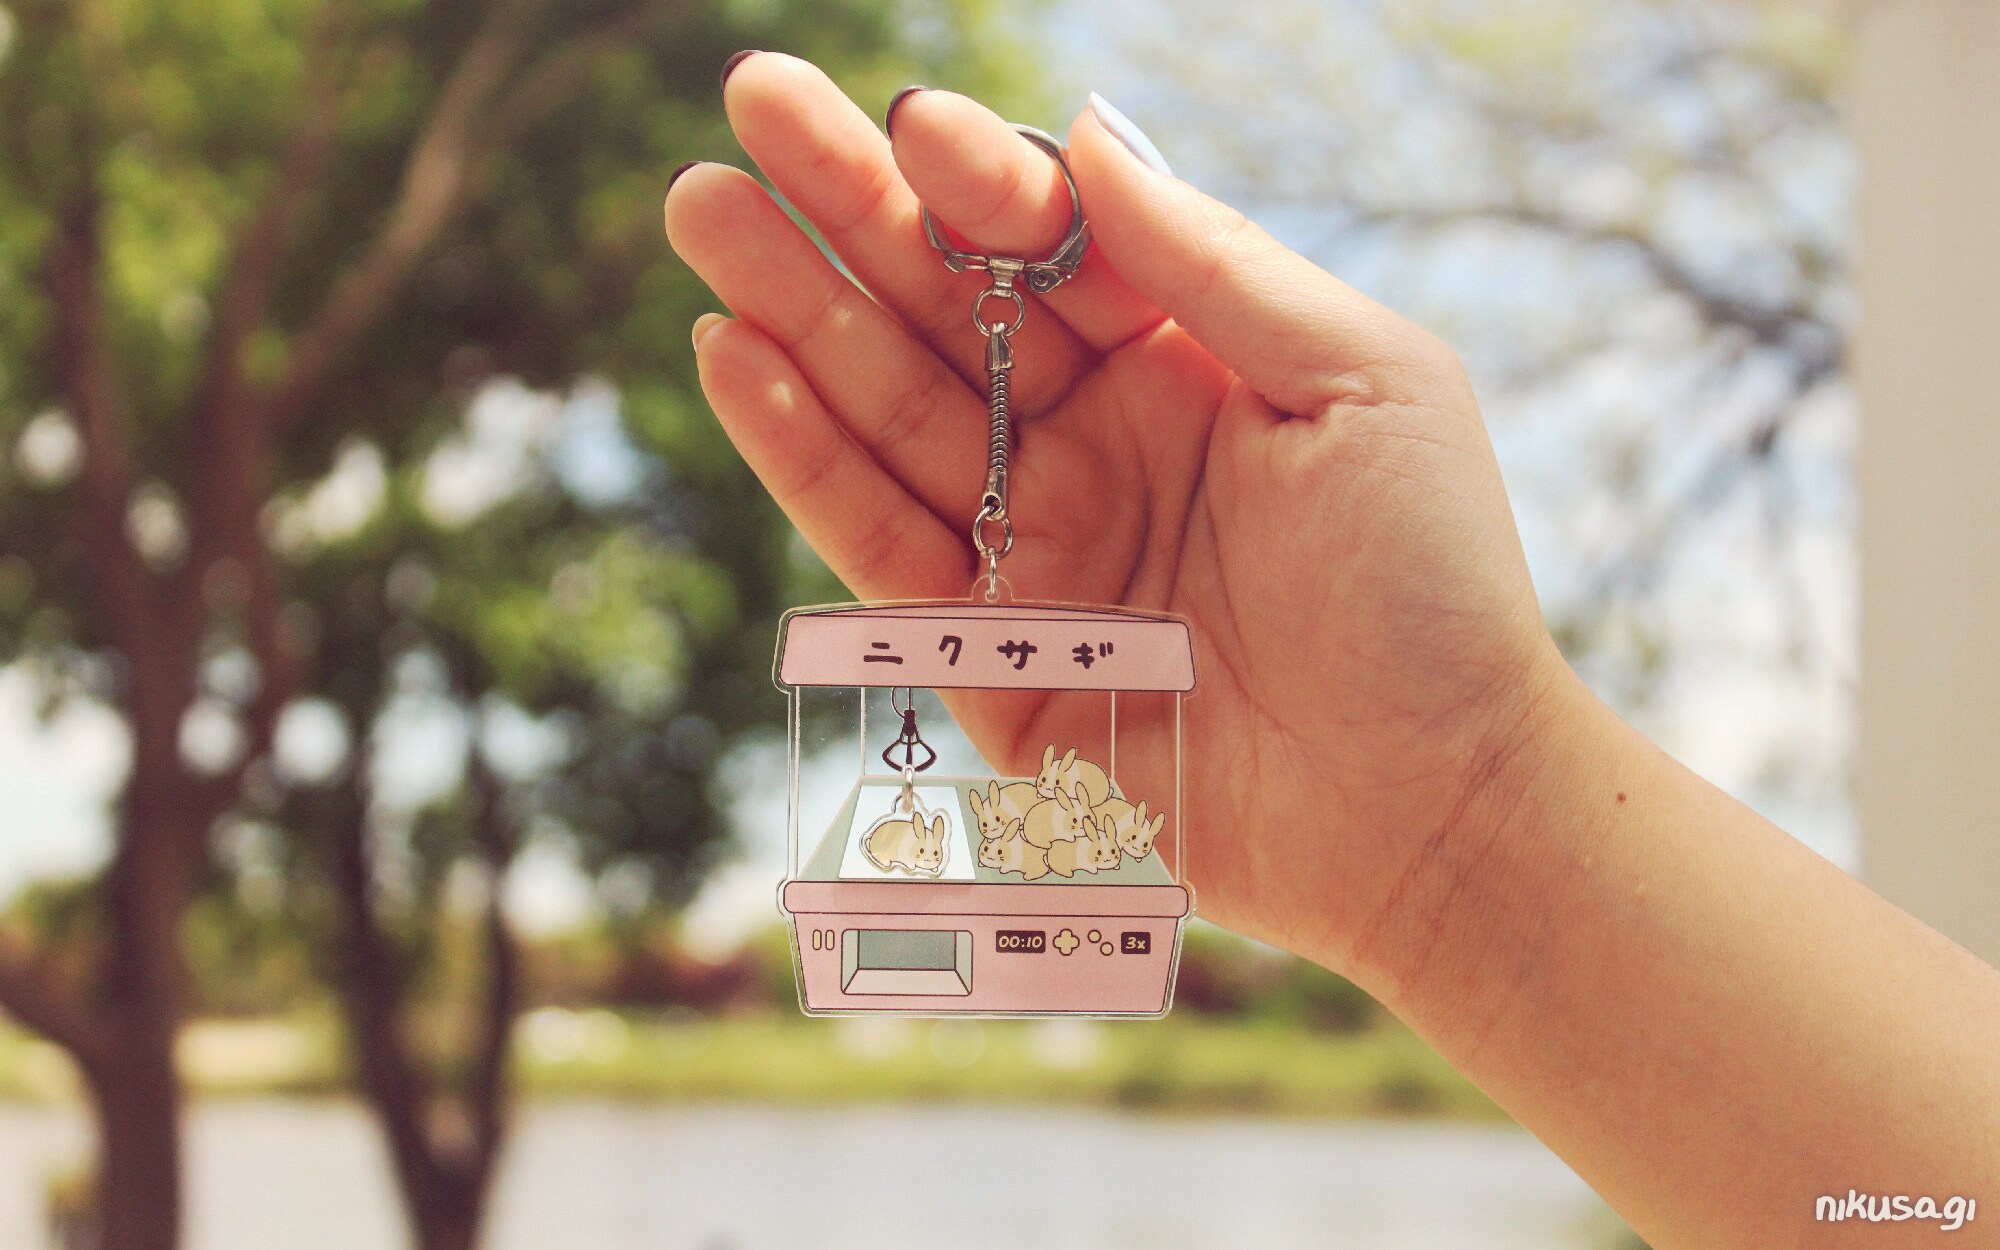 Caged Fairy cute kawaii clear acrylic keychain charm - Dreamchaserart